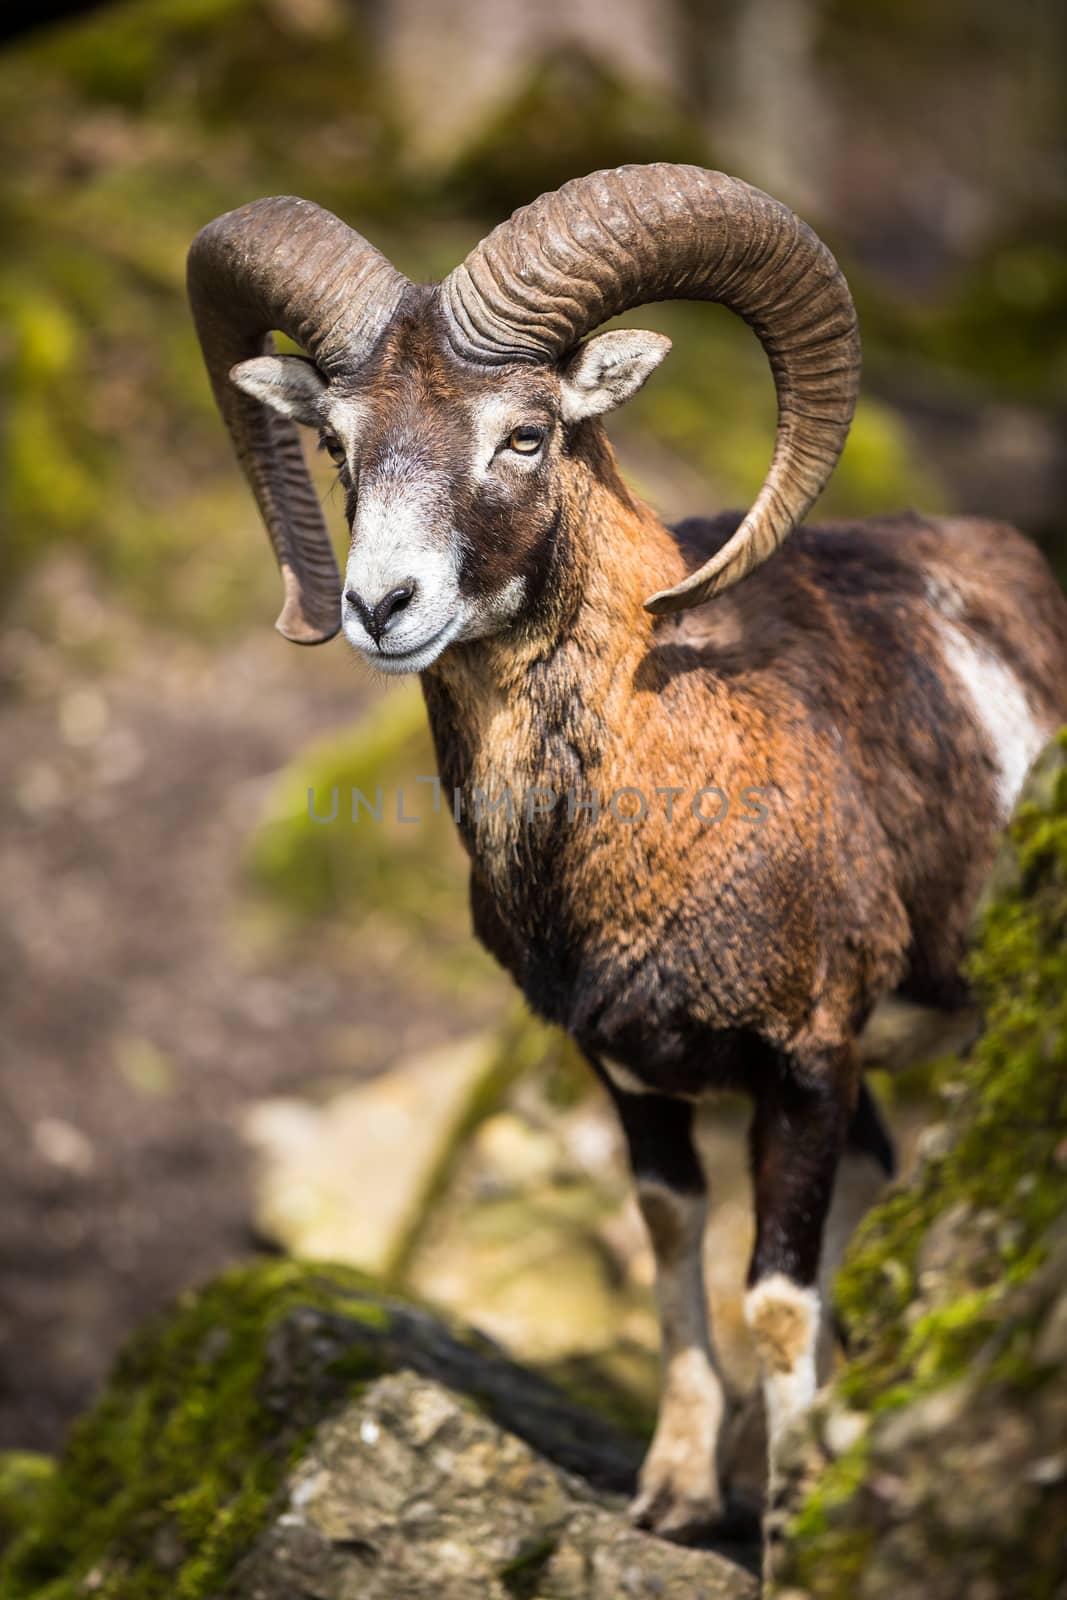 The mouflon (Ovis orientalis) by viktor_cap